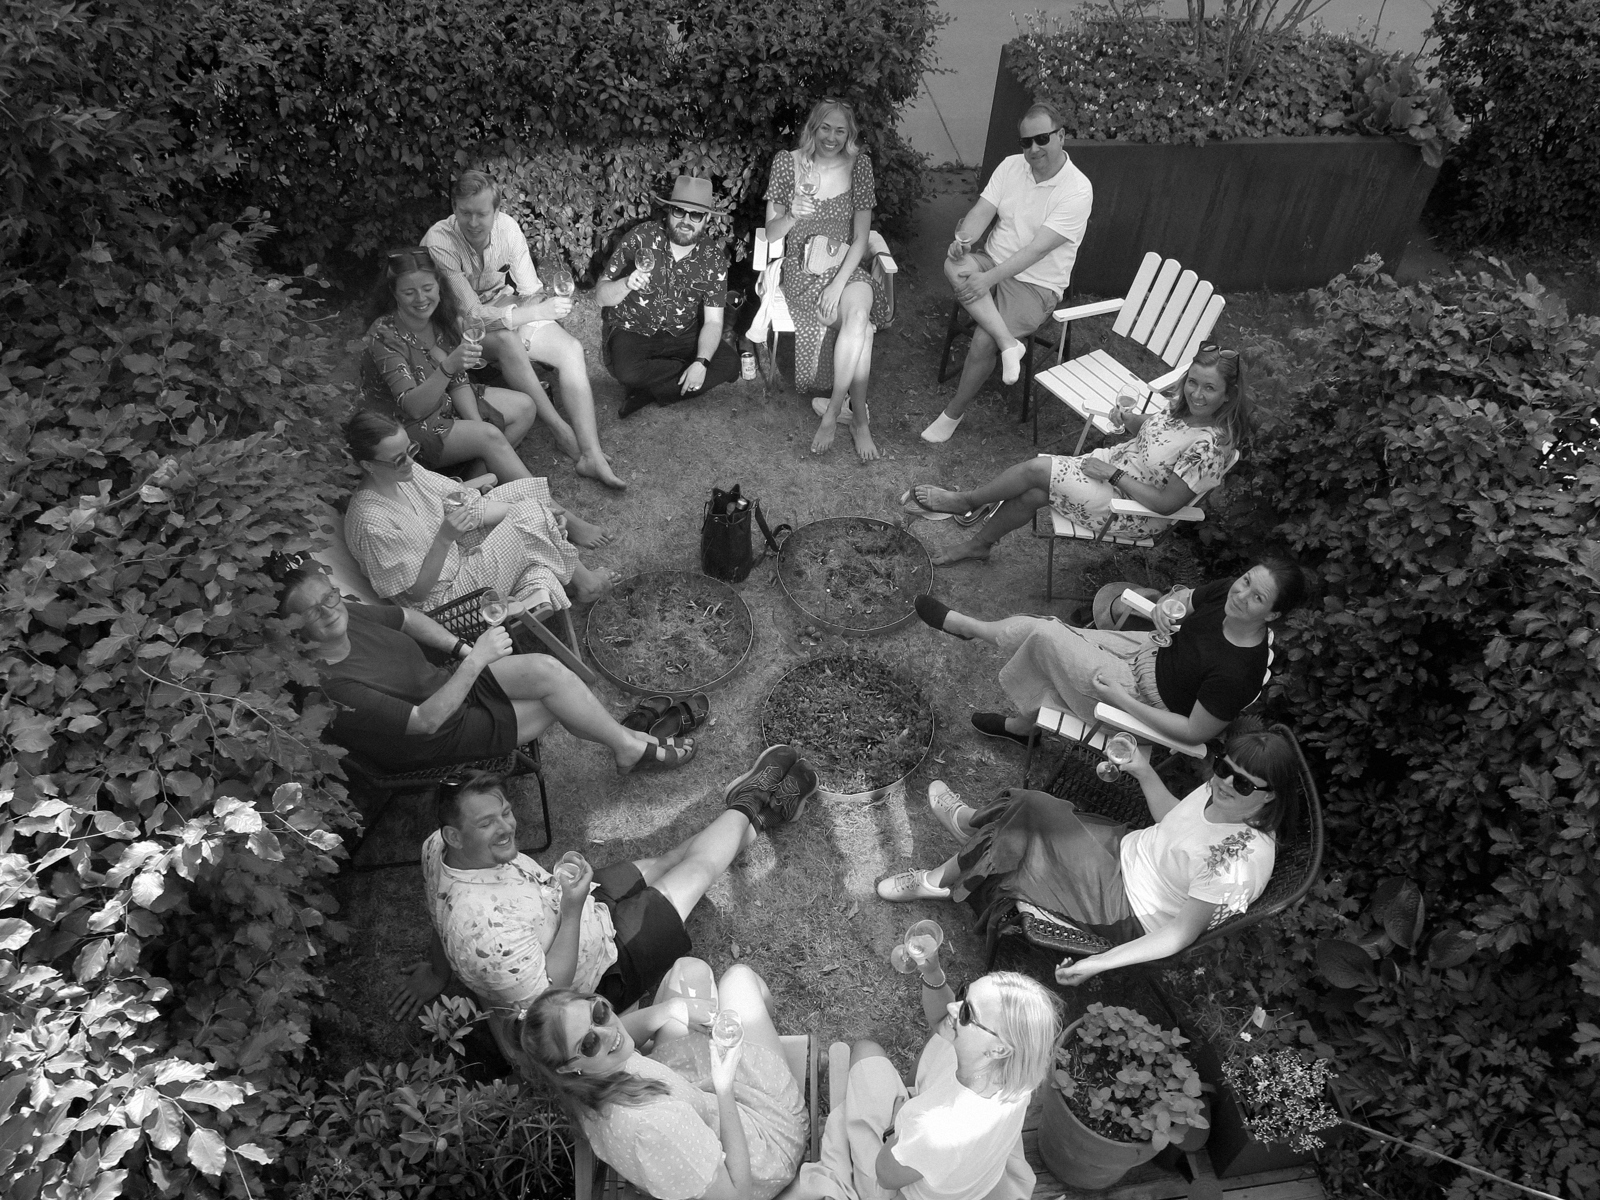 Mennesker sitter i en sirkel i en hage med busker rundt og ser opp på fotograf. Foto.